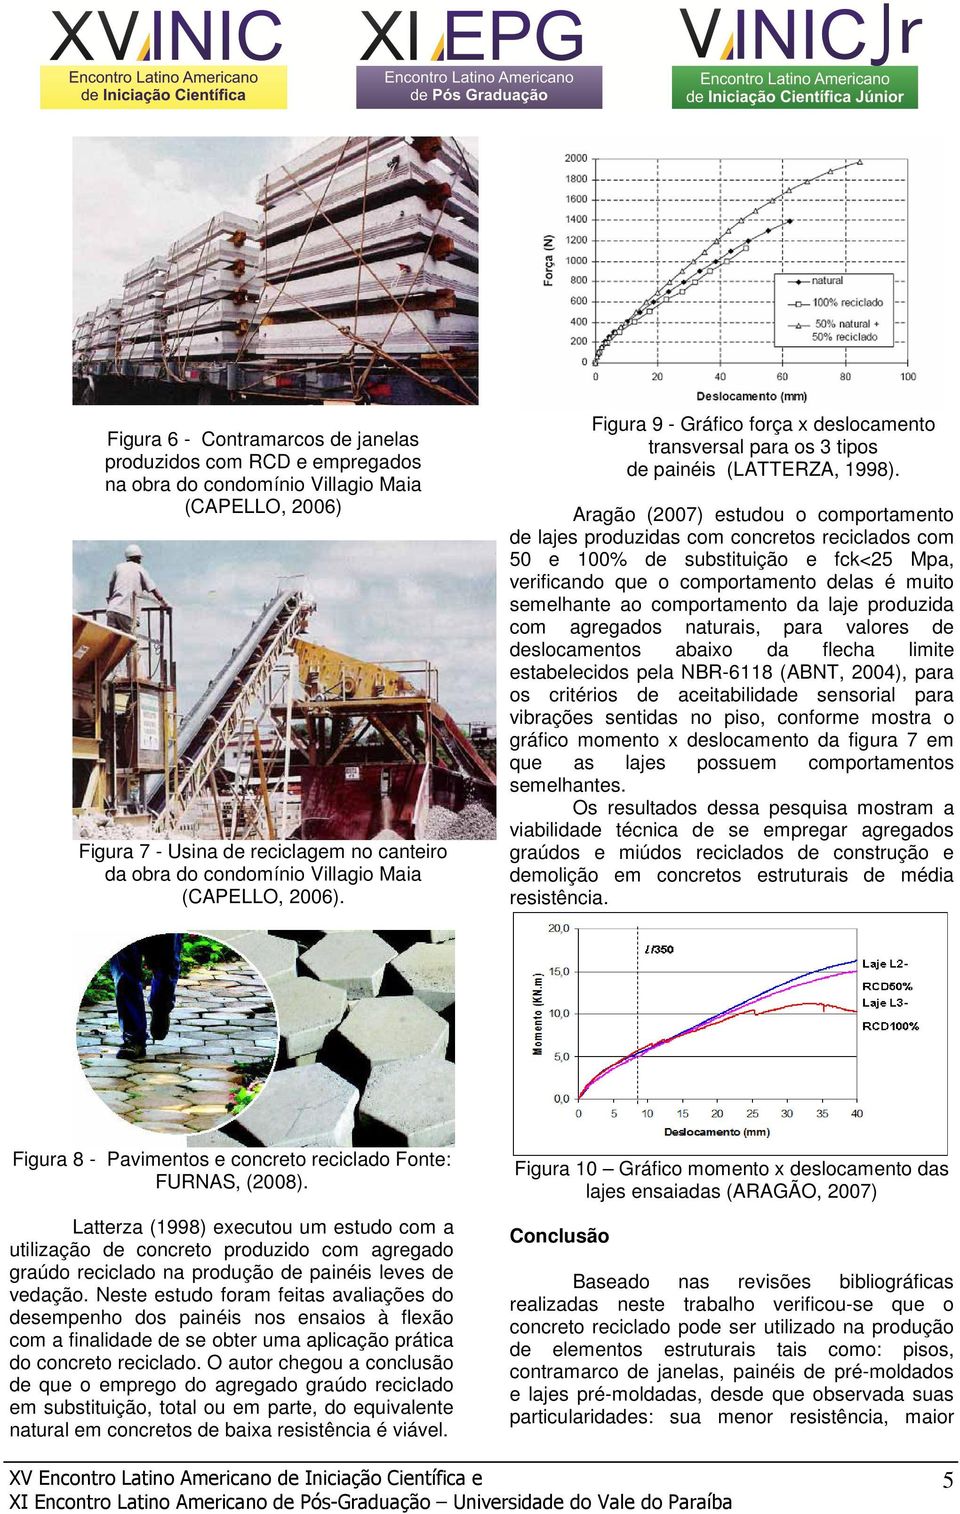 Aragão (2007) estudou o comportamento de lajes produzidas com concretos reciclados com 50 e 100% de substituição e fck<25 Mpa, verificando que o comportamento delas é muito semelhante ao